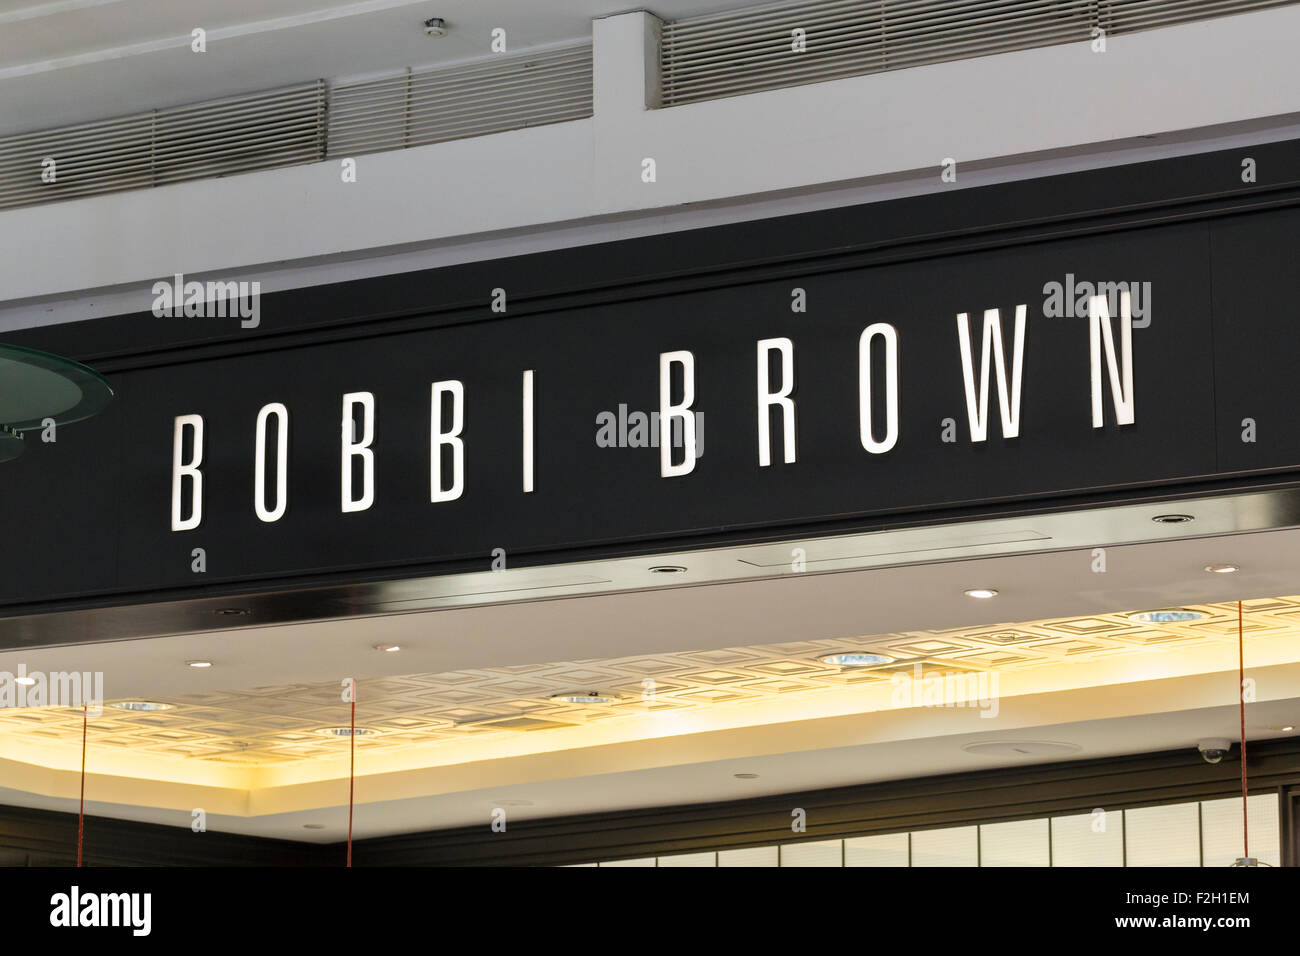 Bobbi Brown shop Stock Photo